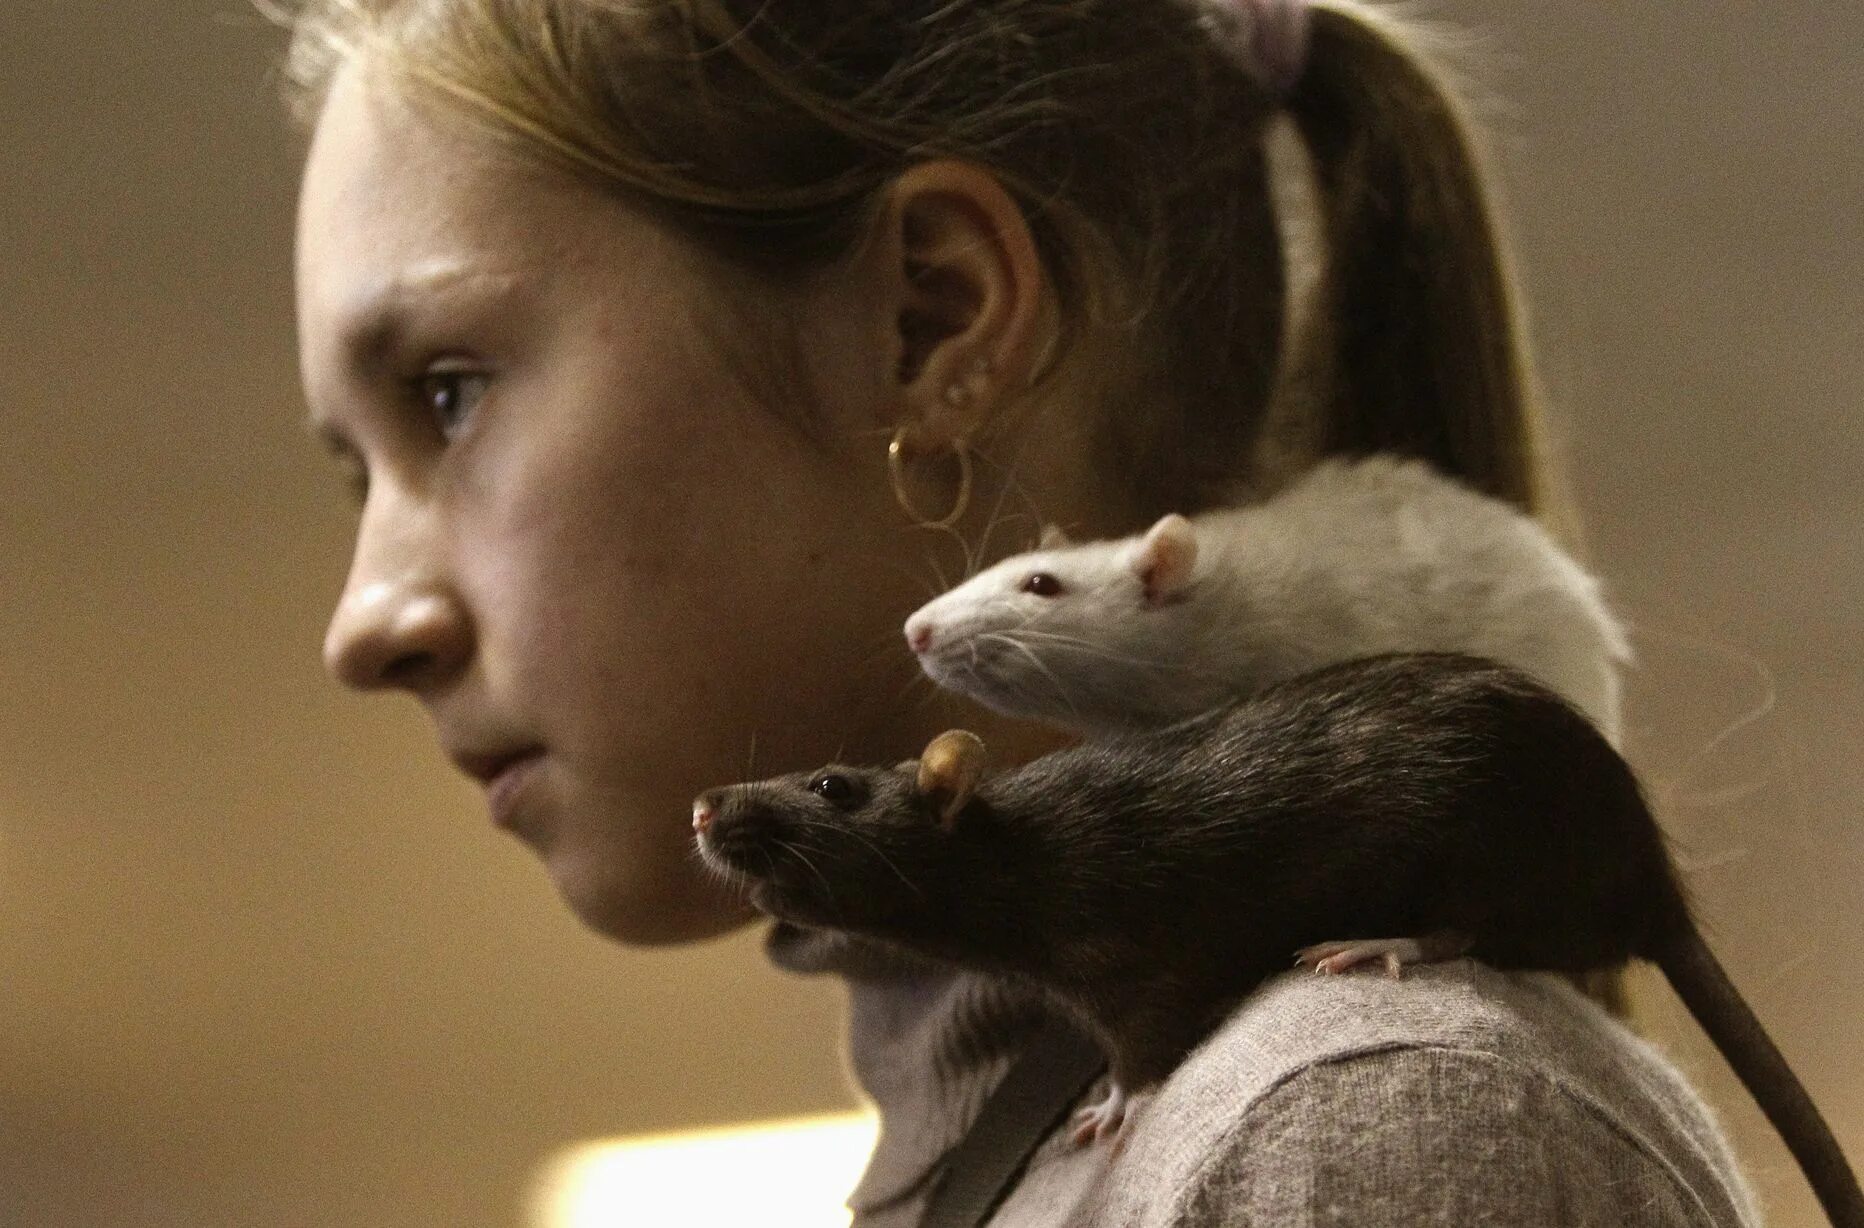 Мыши девочки. Крыса в пледе. Фотосессия с крысами. Декоративная крыса на плече. Девушка крыса.